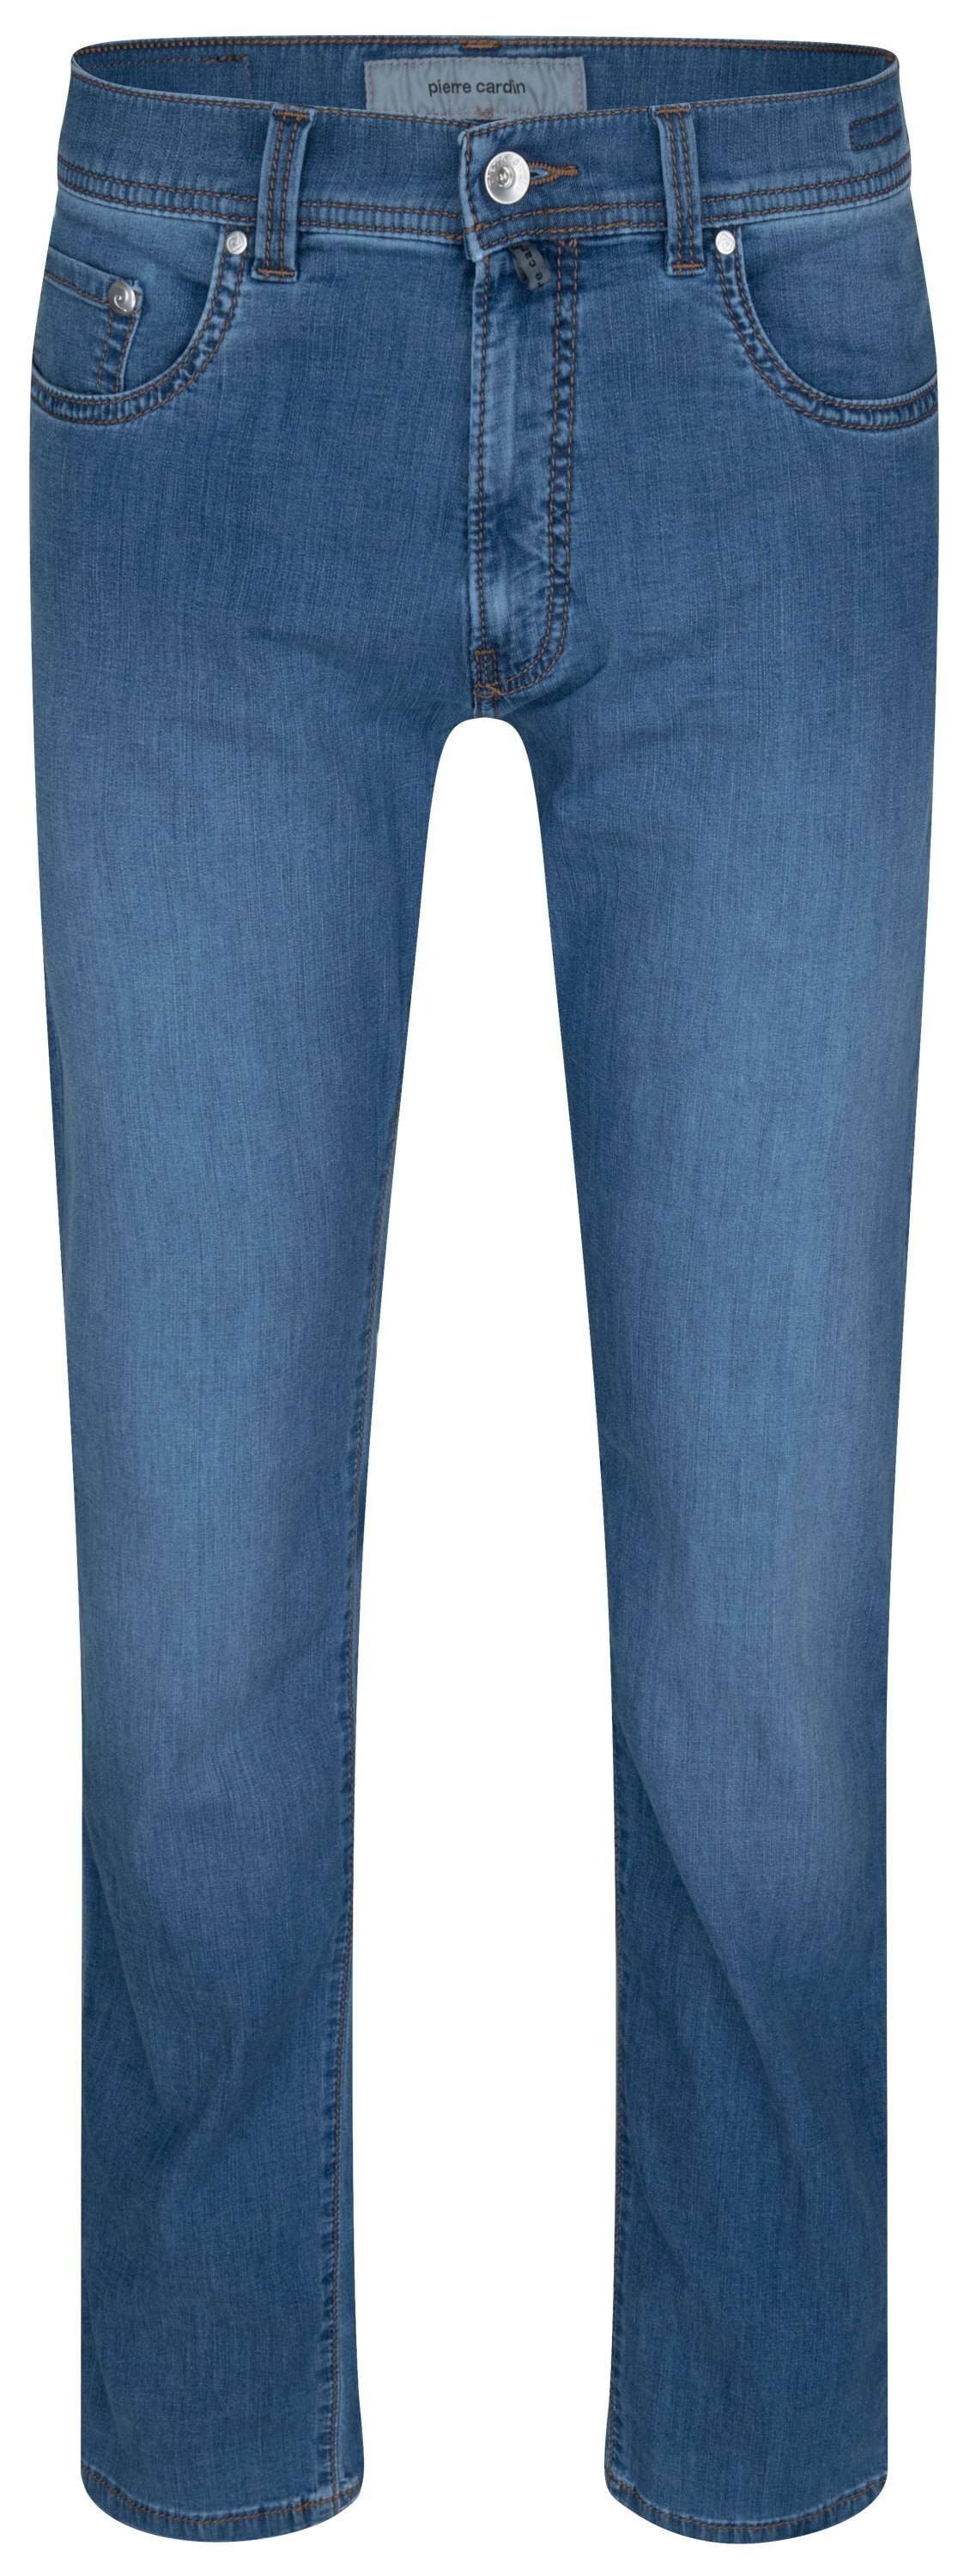 Pierre Cardin 5-Pocket-Jeans PIERRE CARDIN LYON TAPERED ocean blue fashion 34510 7730.6837 - FUTURE